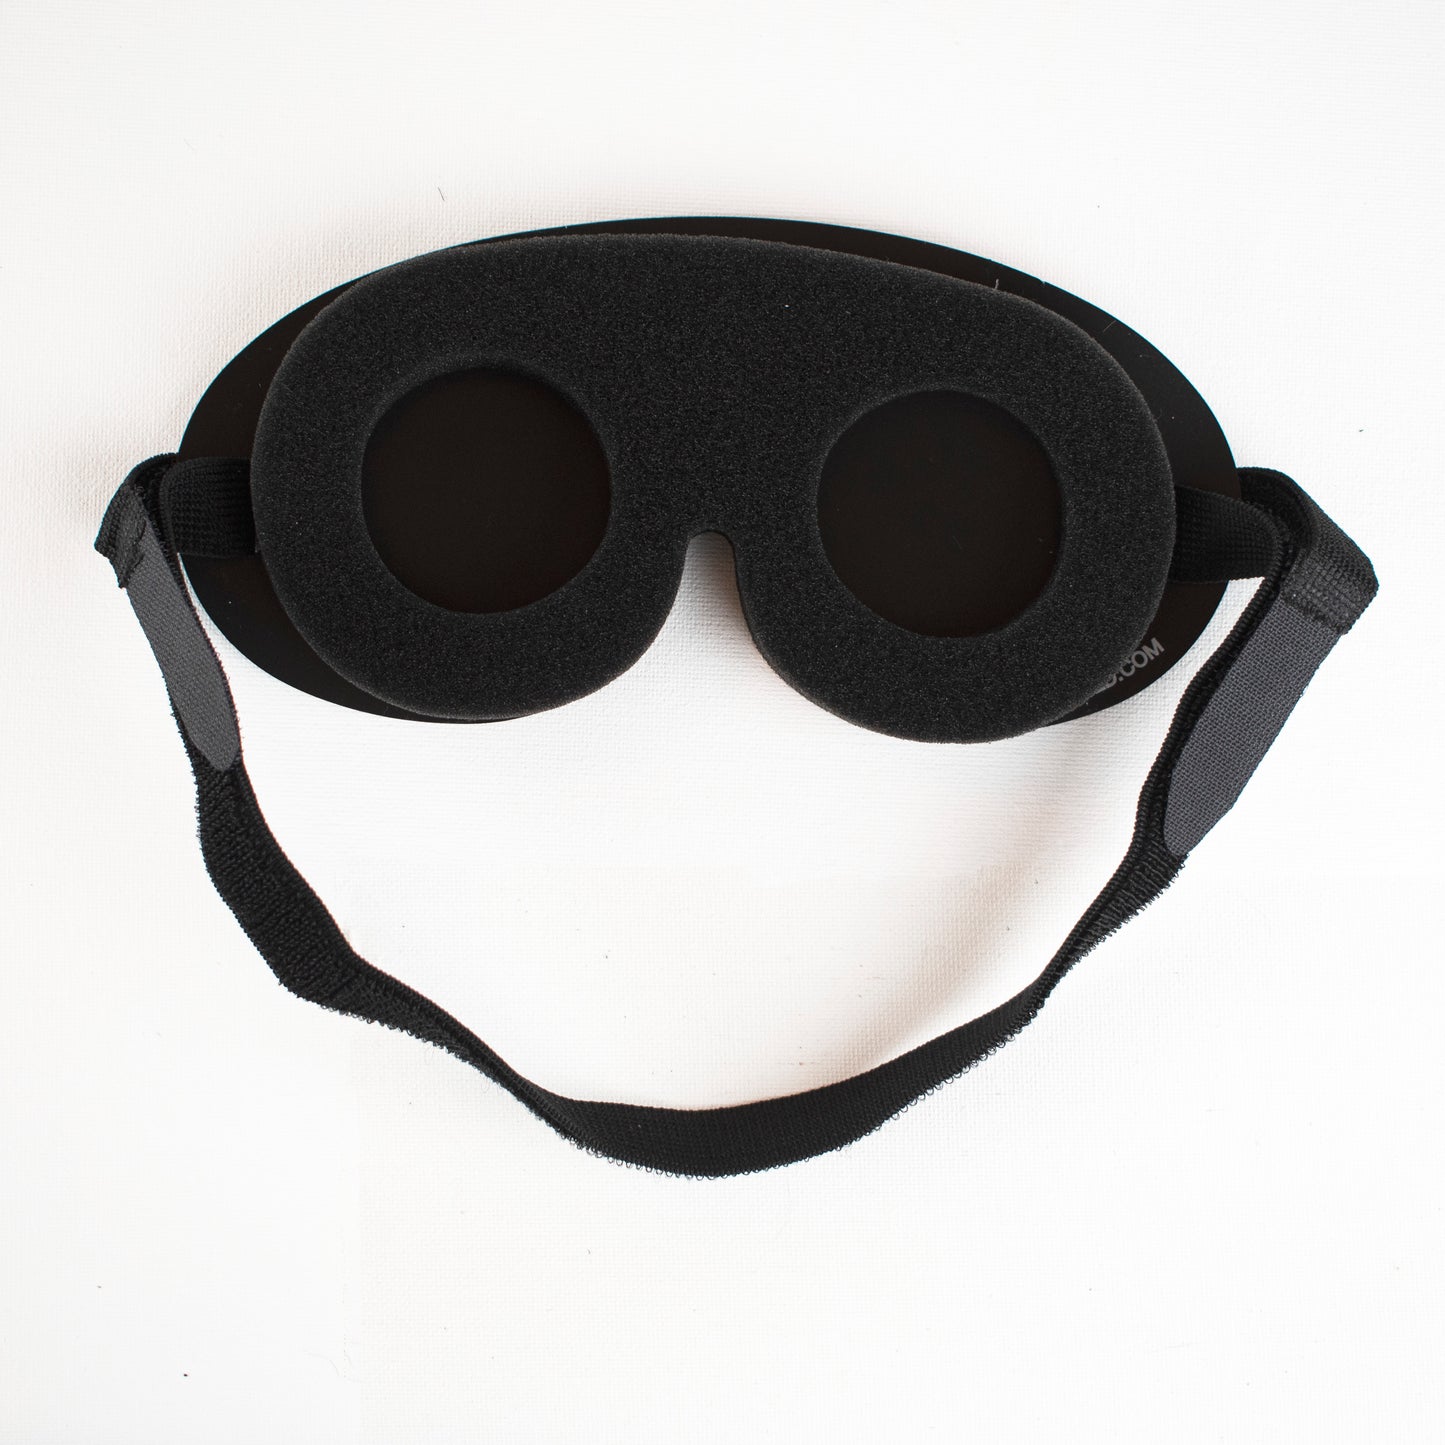 Mindfold – Masker voor sensorische deprivatie – Blinddoek